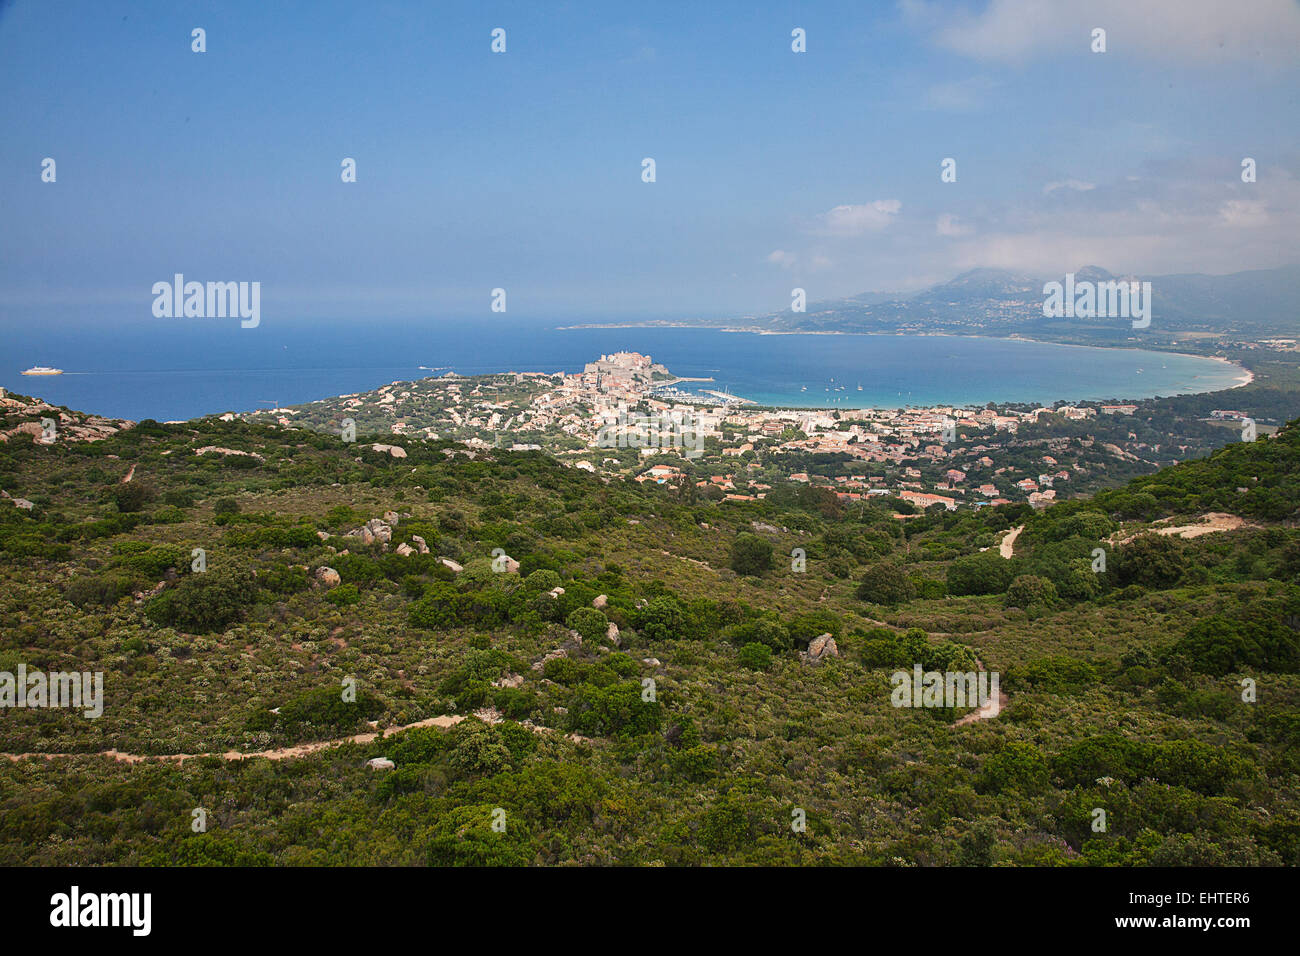 Wir hielten an einem Aussichtspunkt mit Blick auf die Stadt und den Hafen von Calvi. Stockfoto